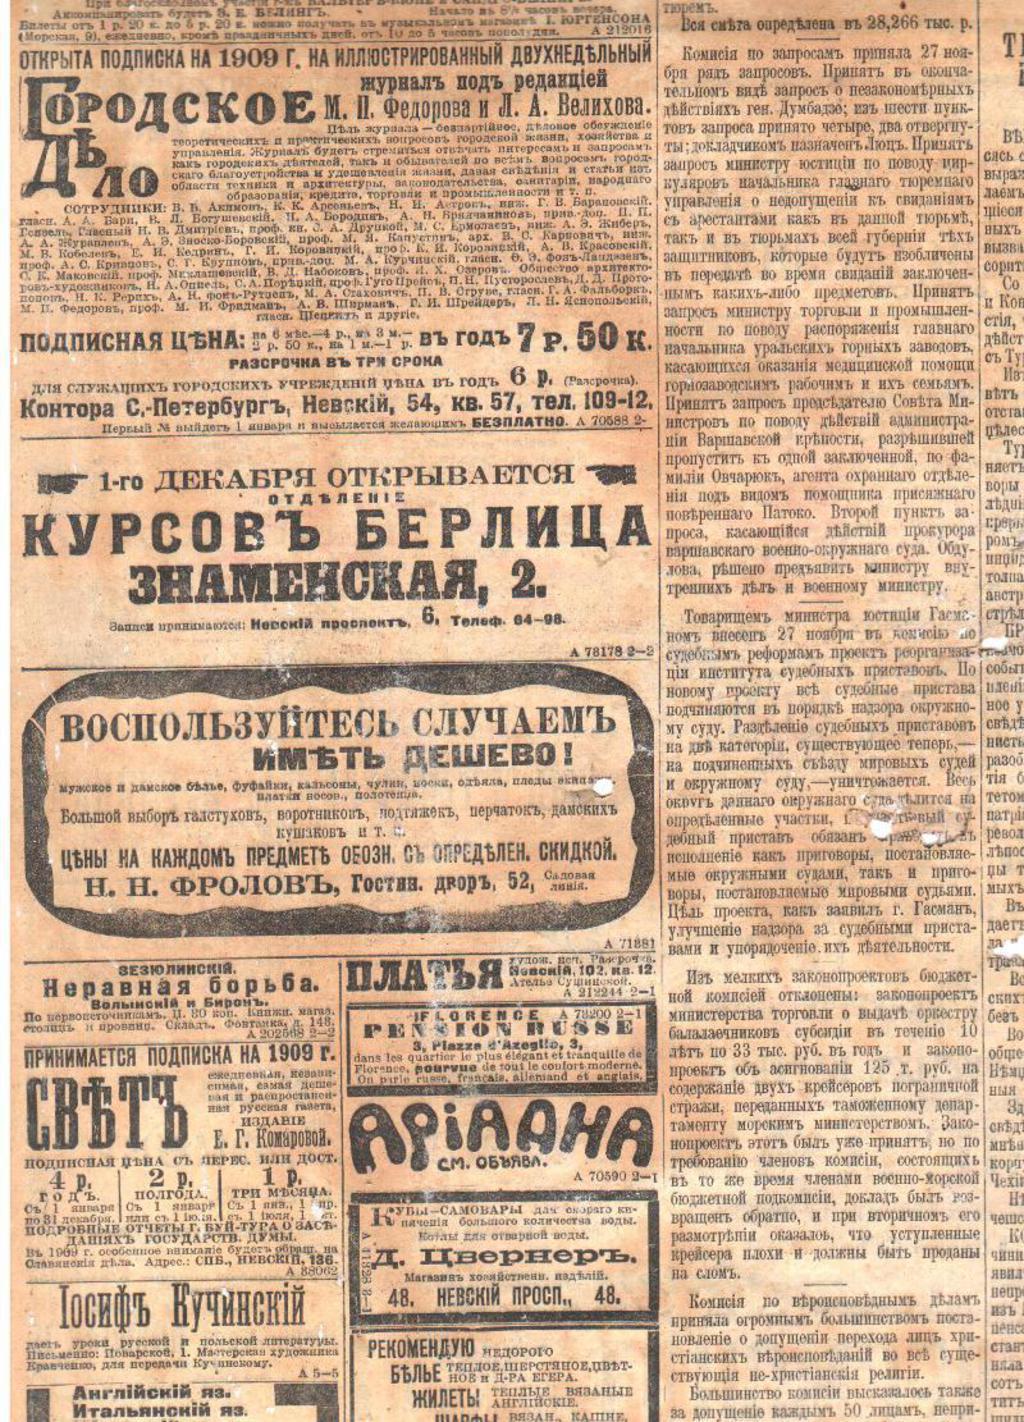 Газета "Новое время". Санкт-Петербург 1908 год. Рекламные объявления